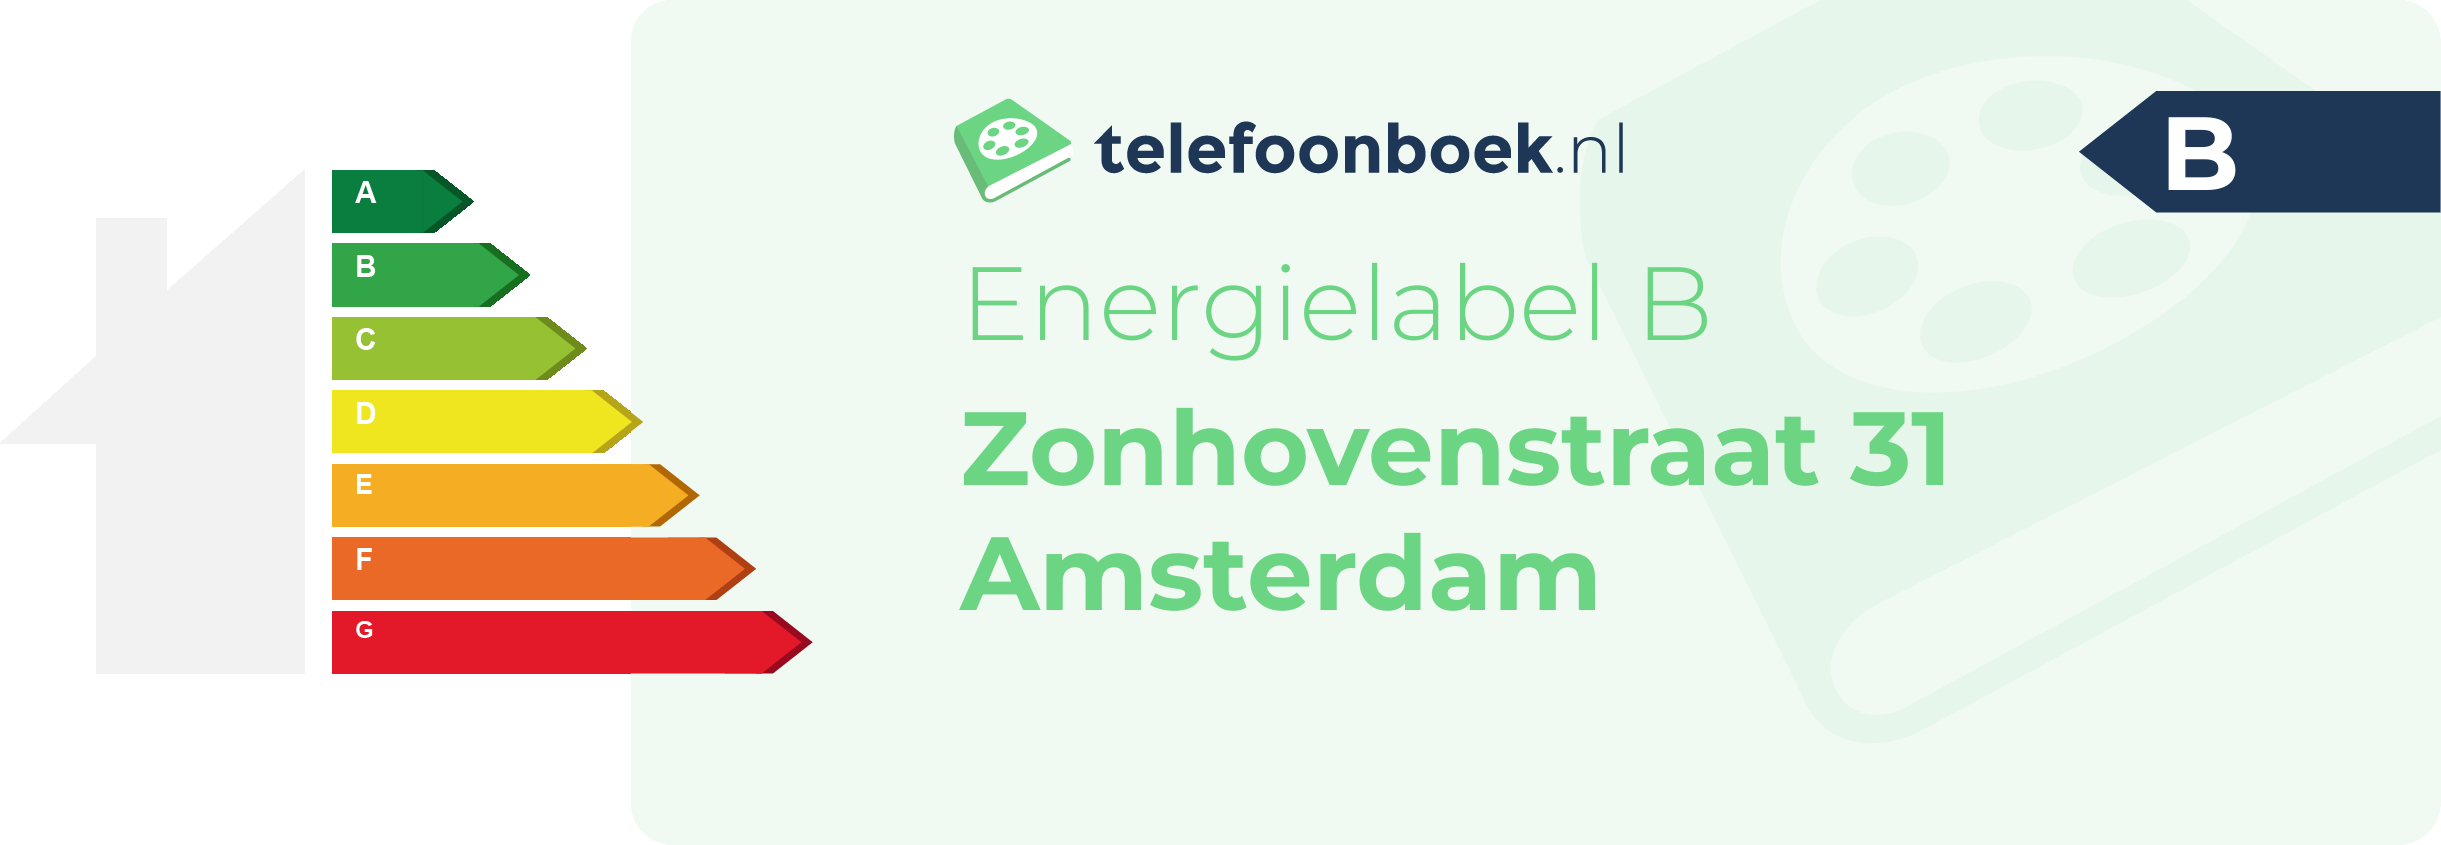 Energielabel Zonhovenstraat 31 Amsterdam